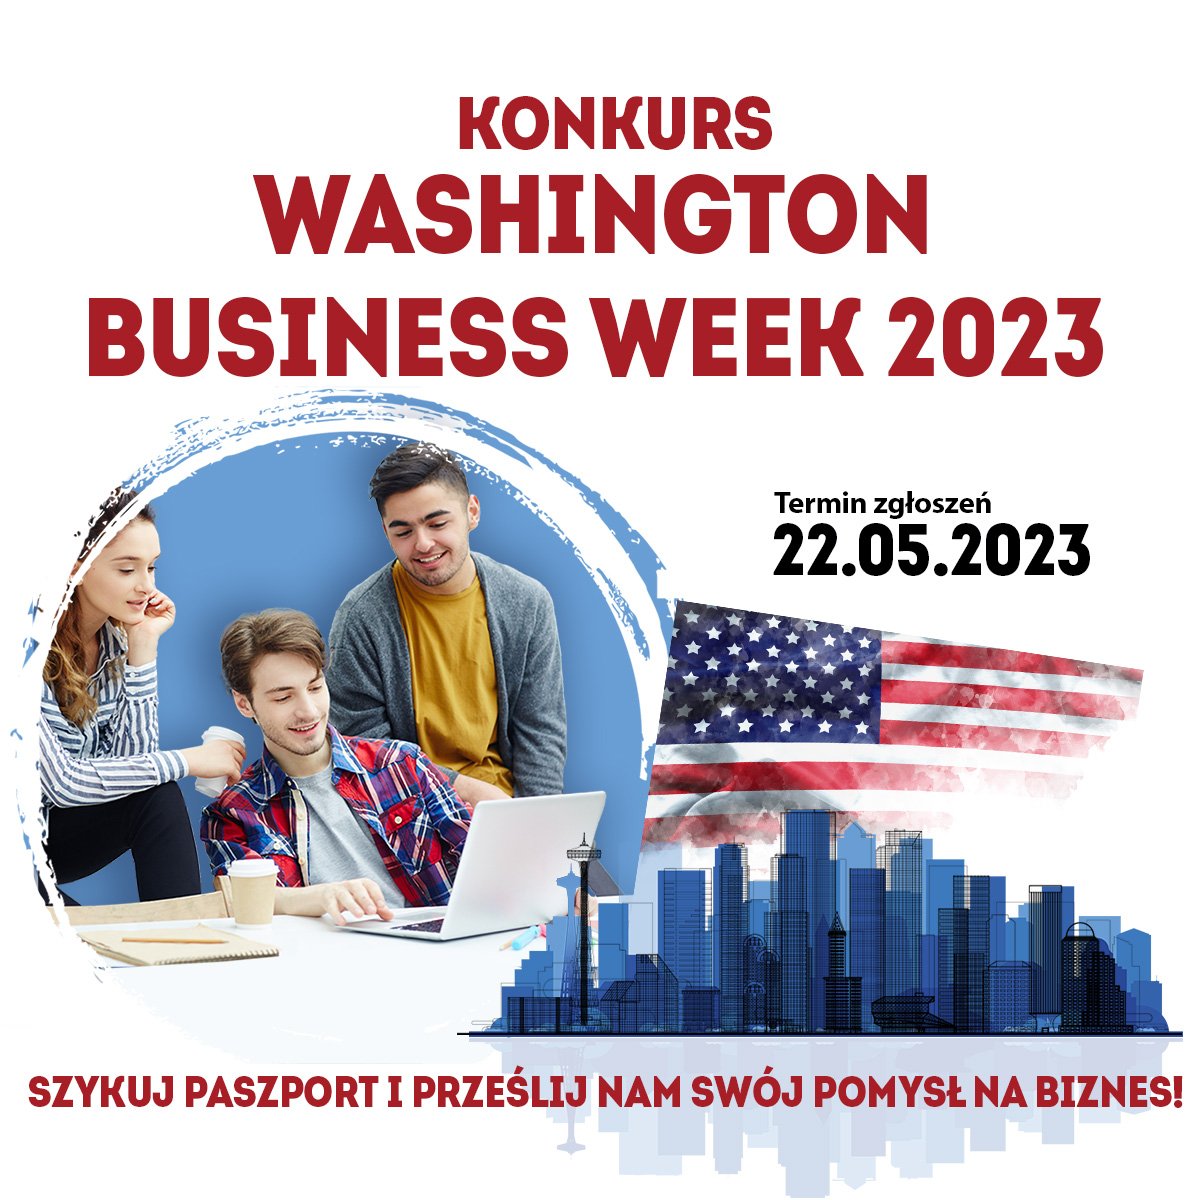 Konkurs Washington Business Week 2023